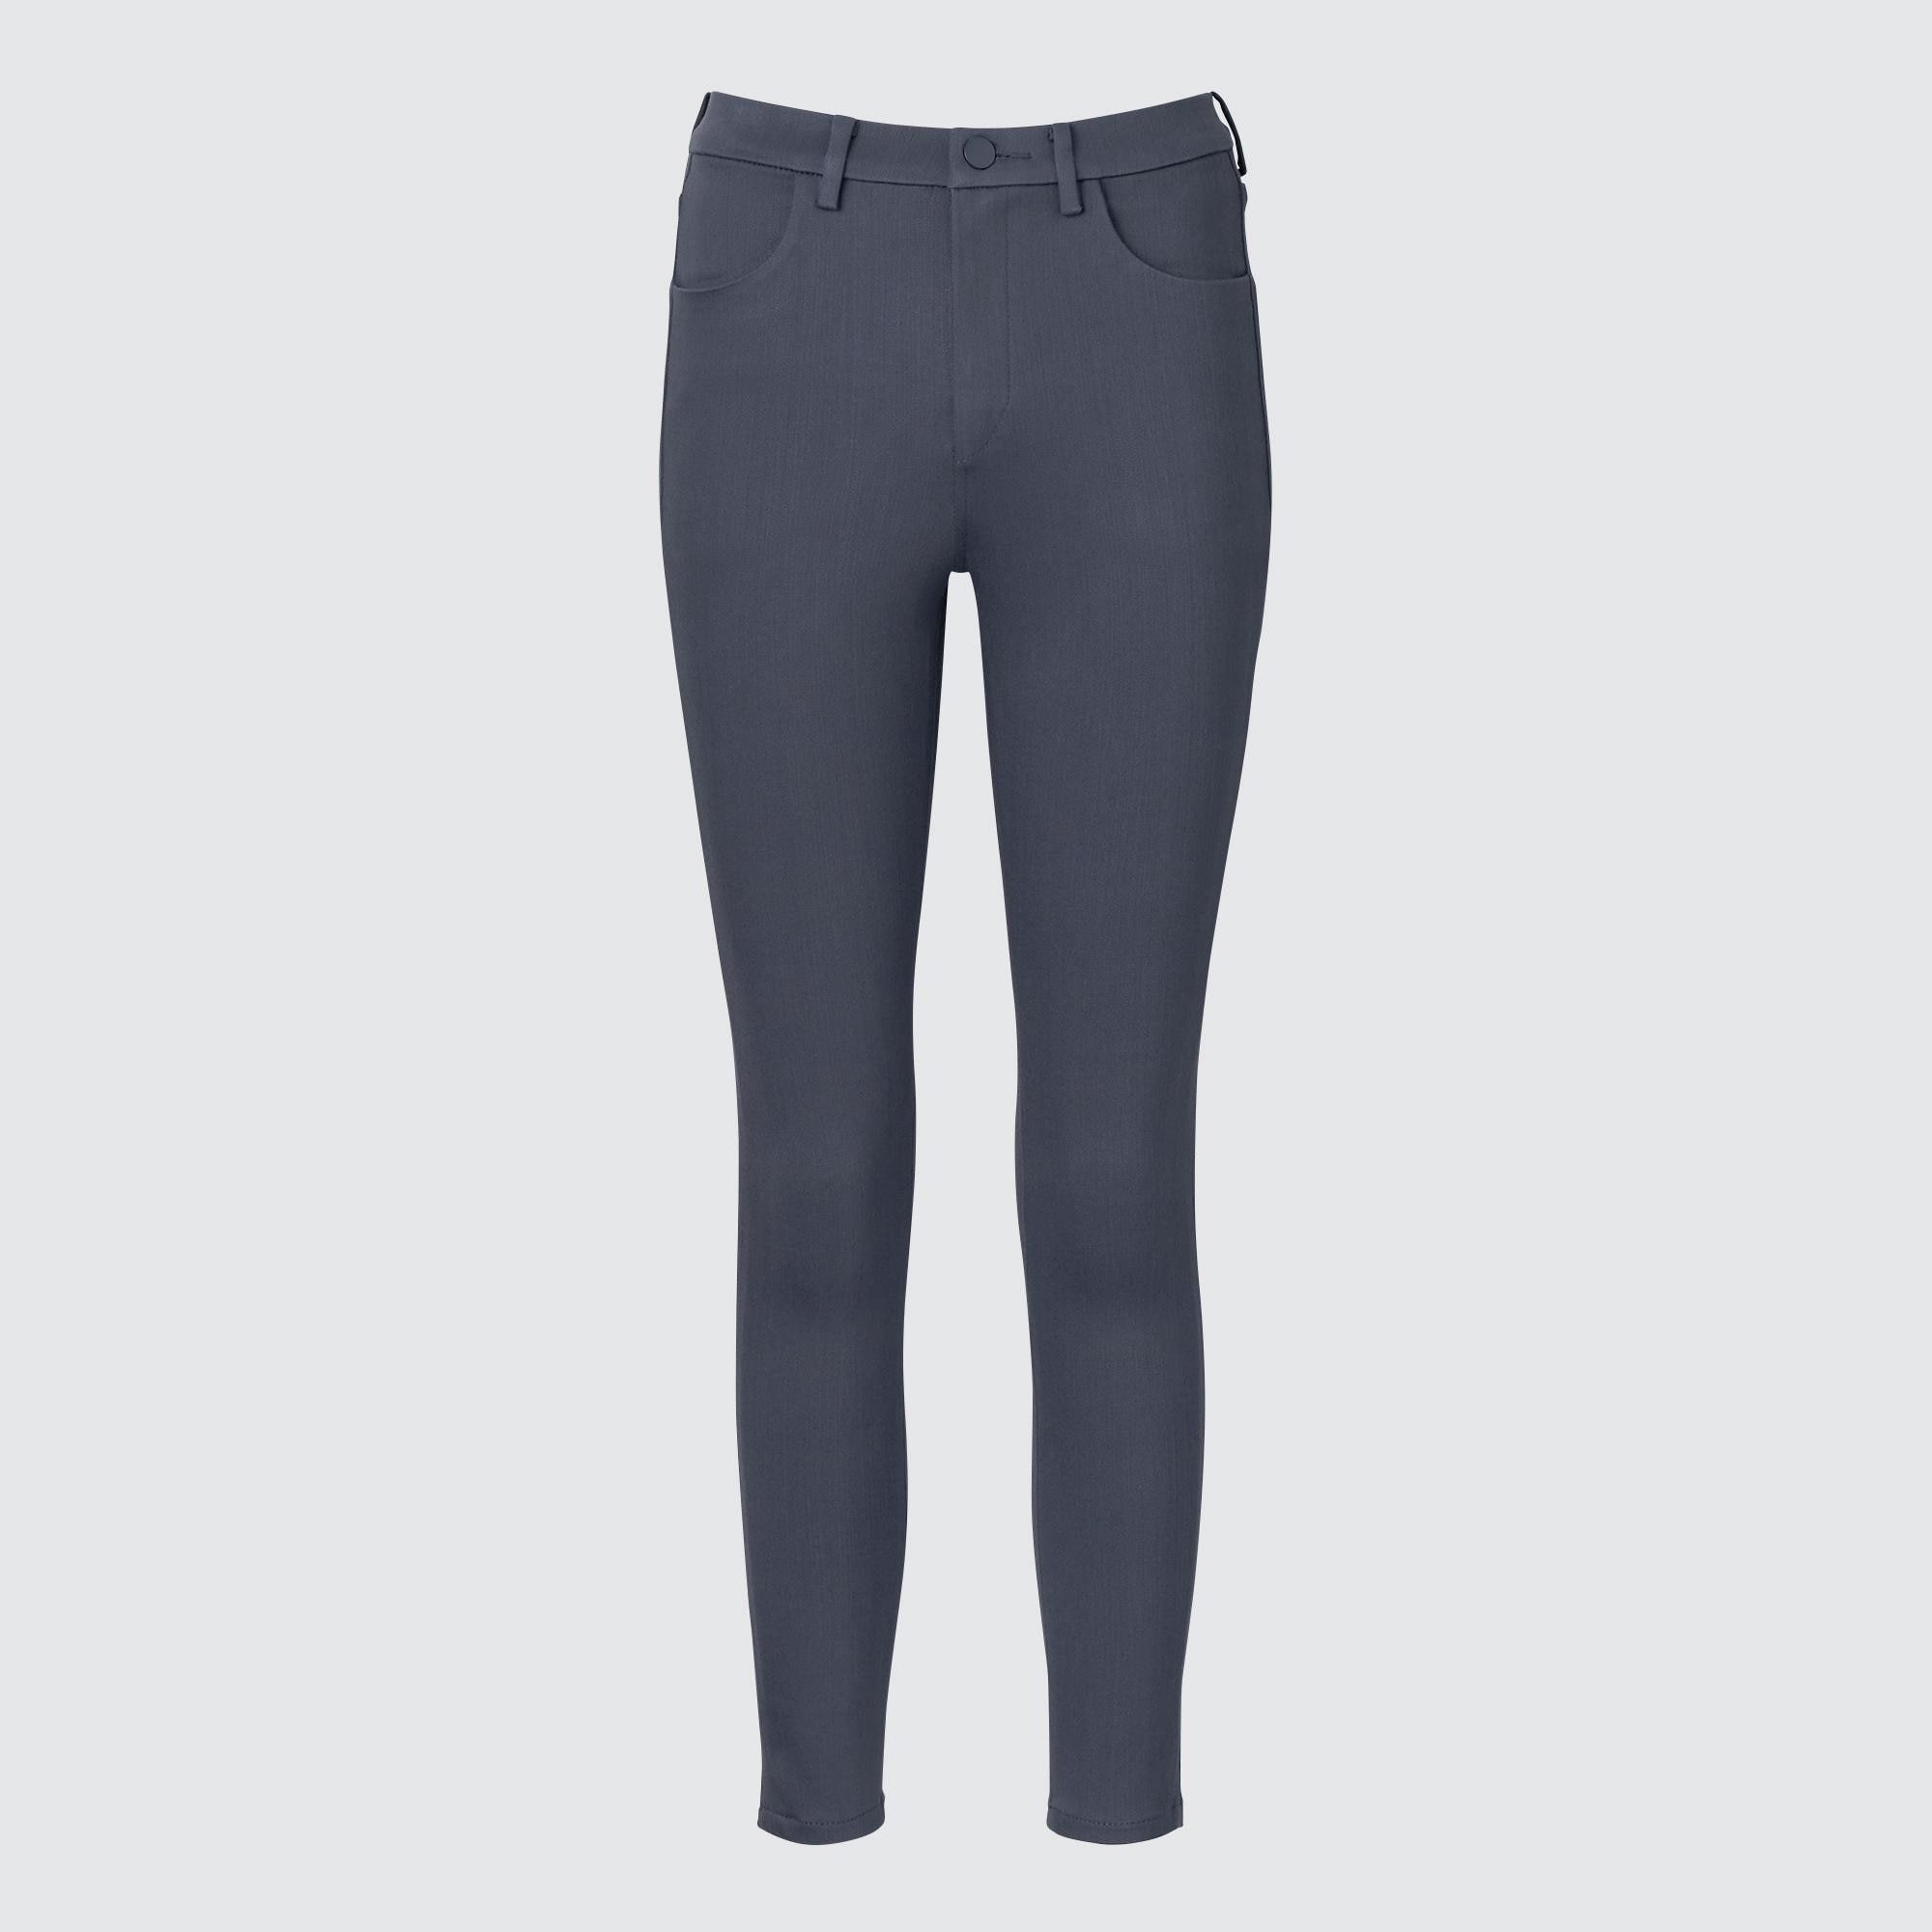 Джинсы Uniqlo женские скинни, серый джинсы скинни uniqlo размер 33 голубой